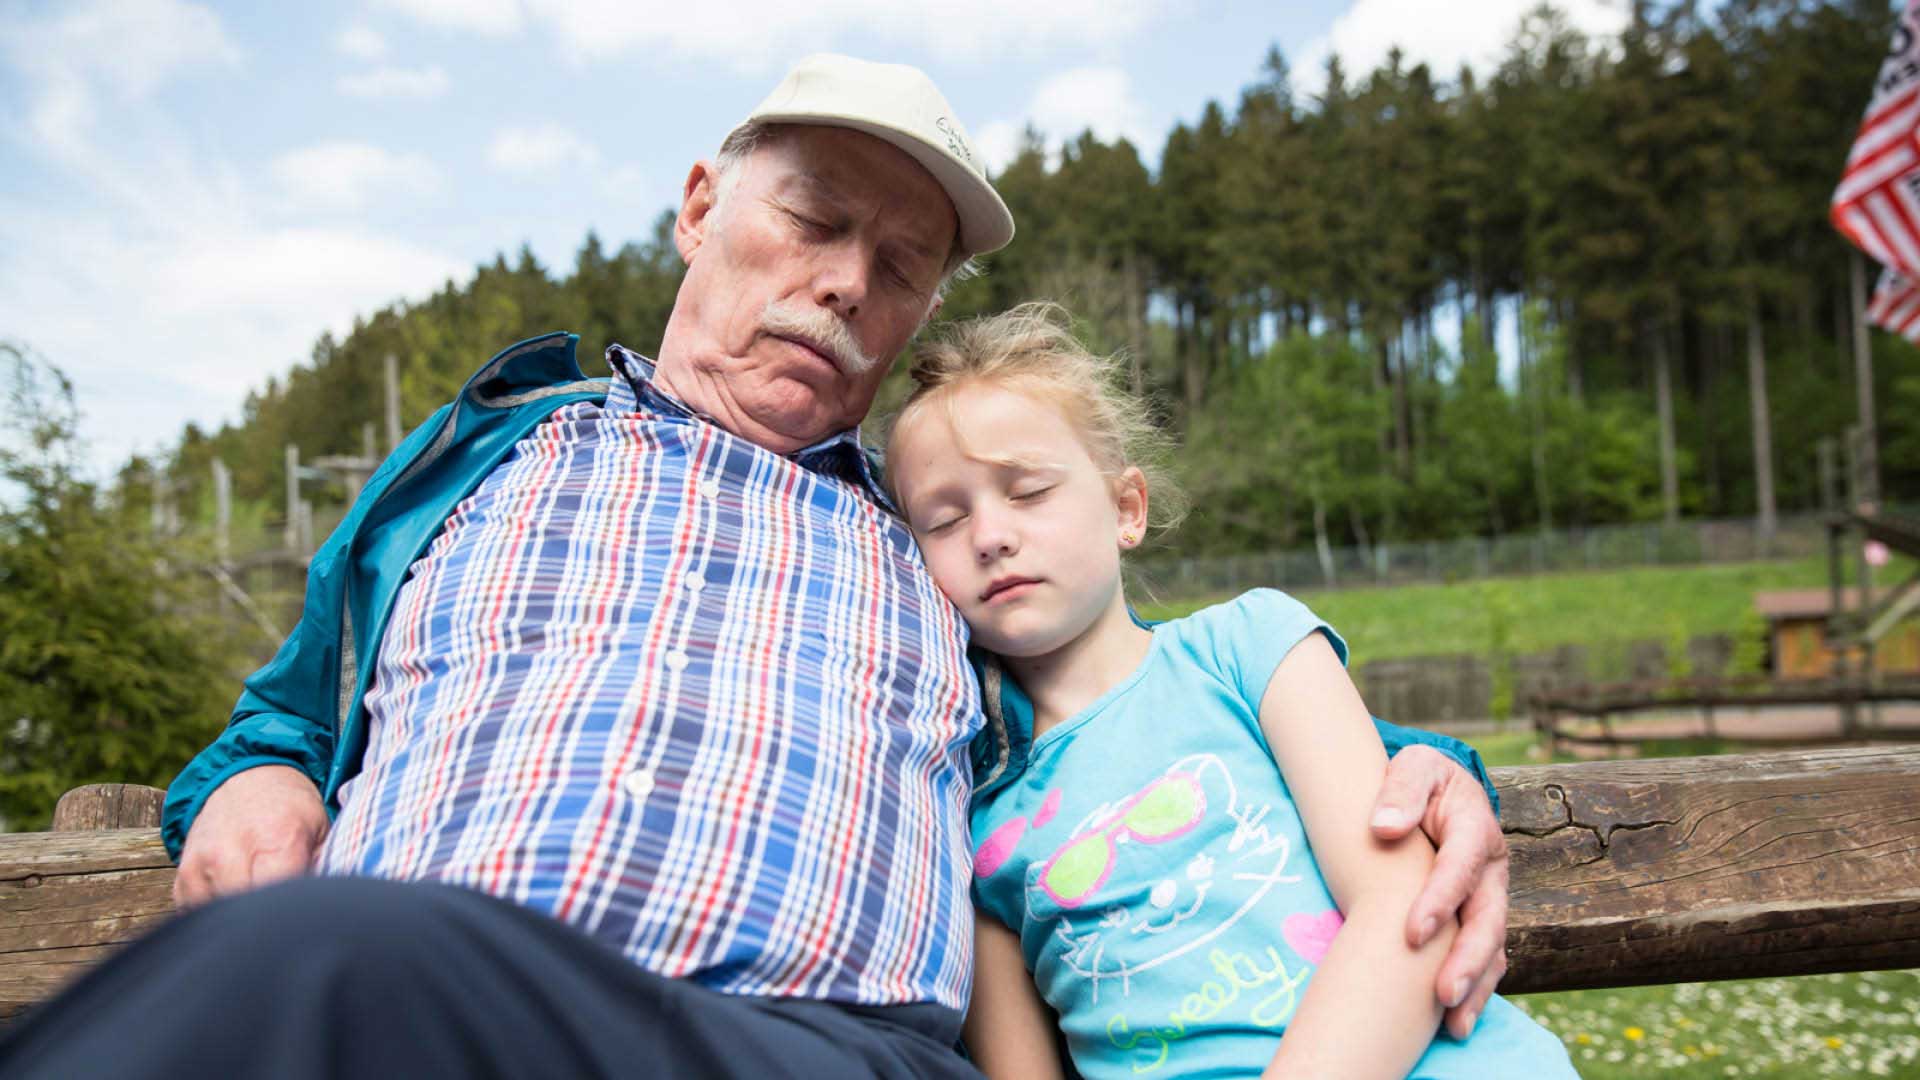 Der Opa und sein Enkelkind sind bei einer Pause auf der Bank im Freizeitpark eingeschlafen.